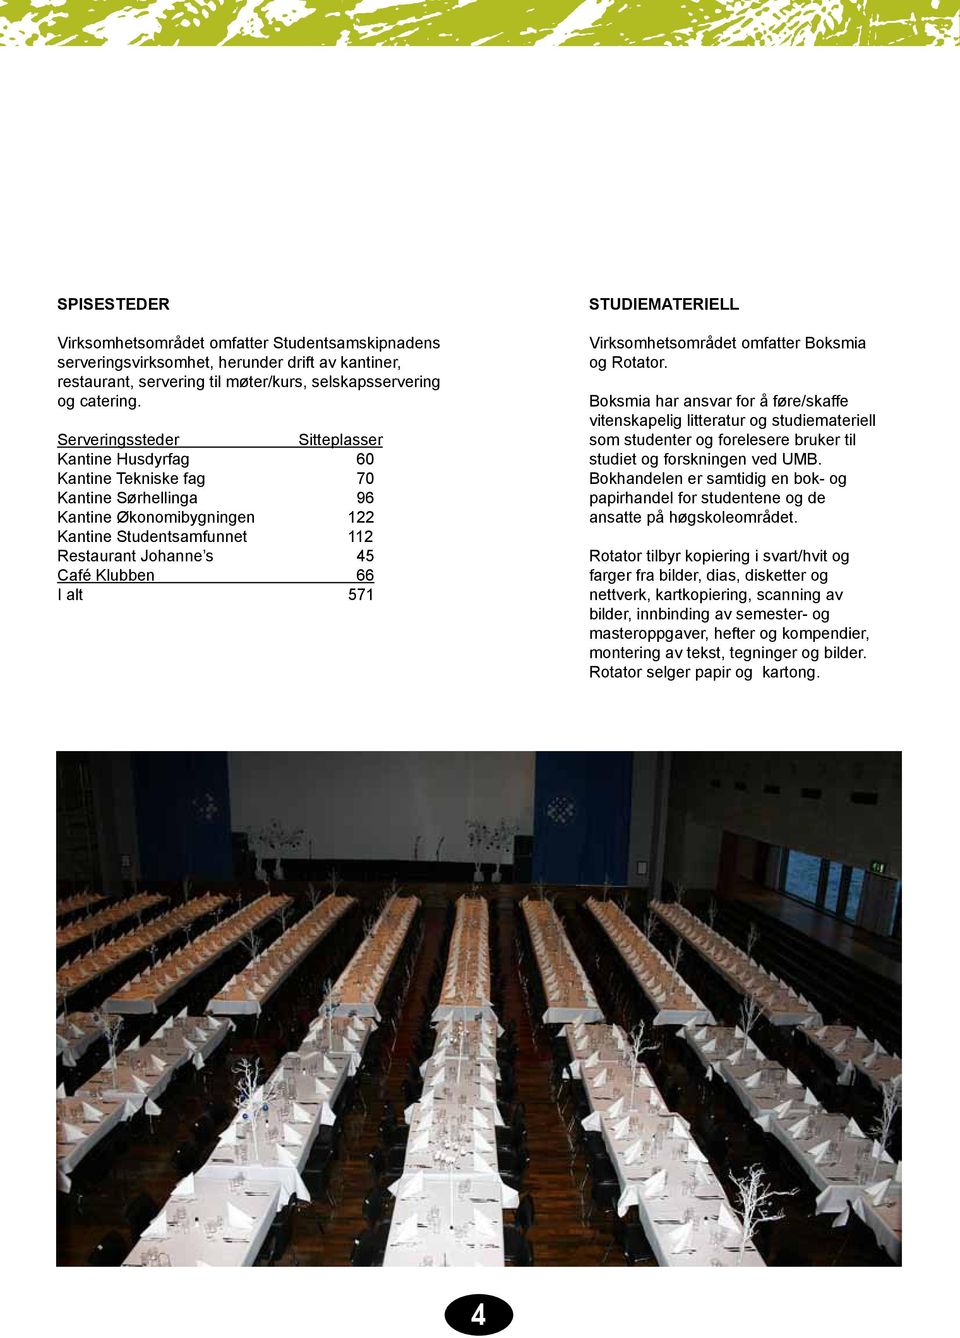 alt 571 STUDIEMATERIELL Virksomhetsområdet omfatter Boksmia og Rotator.